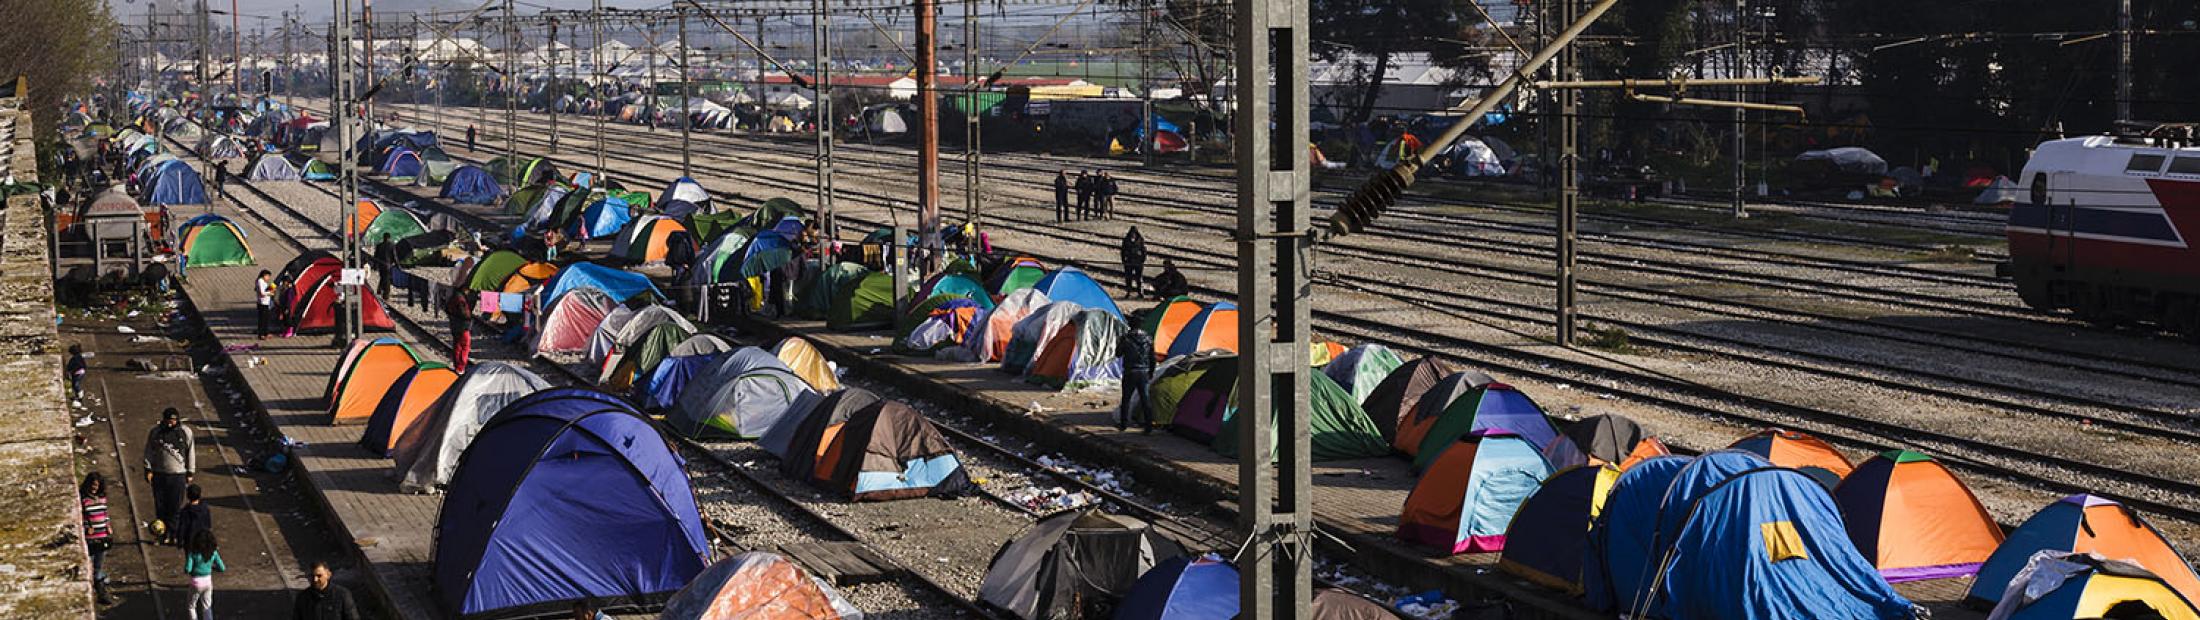 Crisis de refugiados en Europa: ACNUR lanza un nuevo plan para refugiados y migrantes